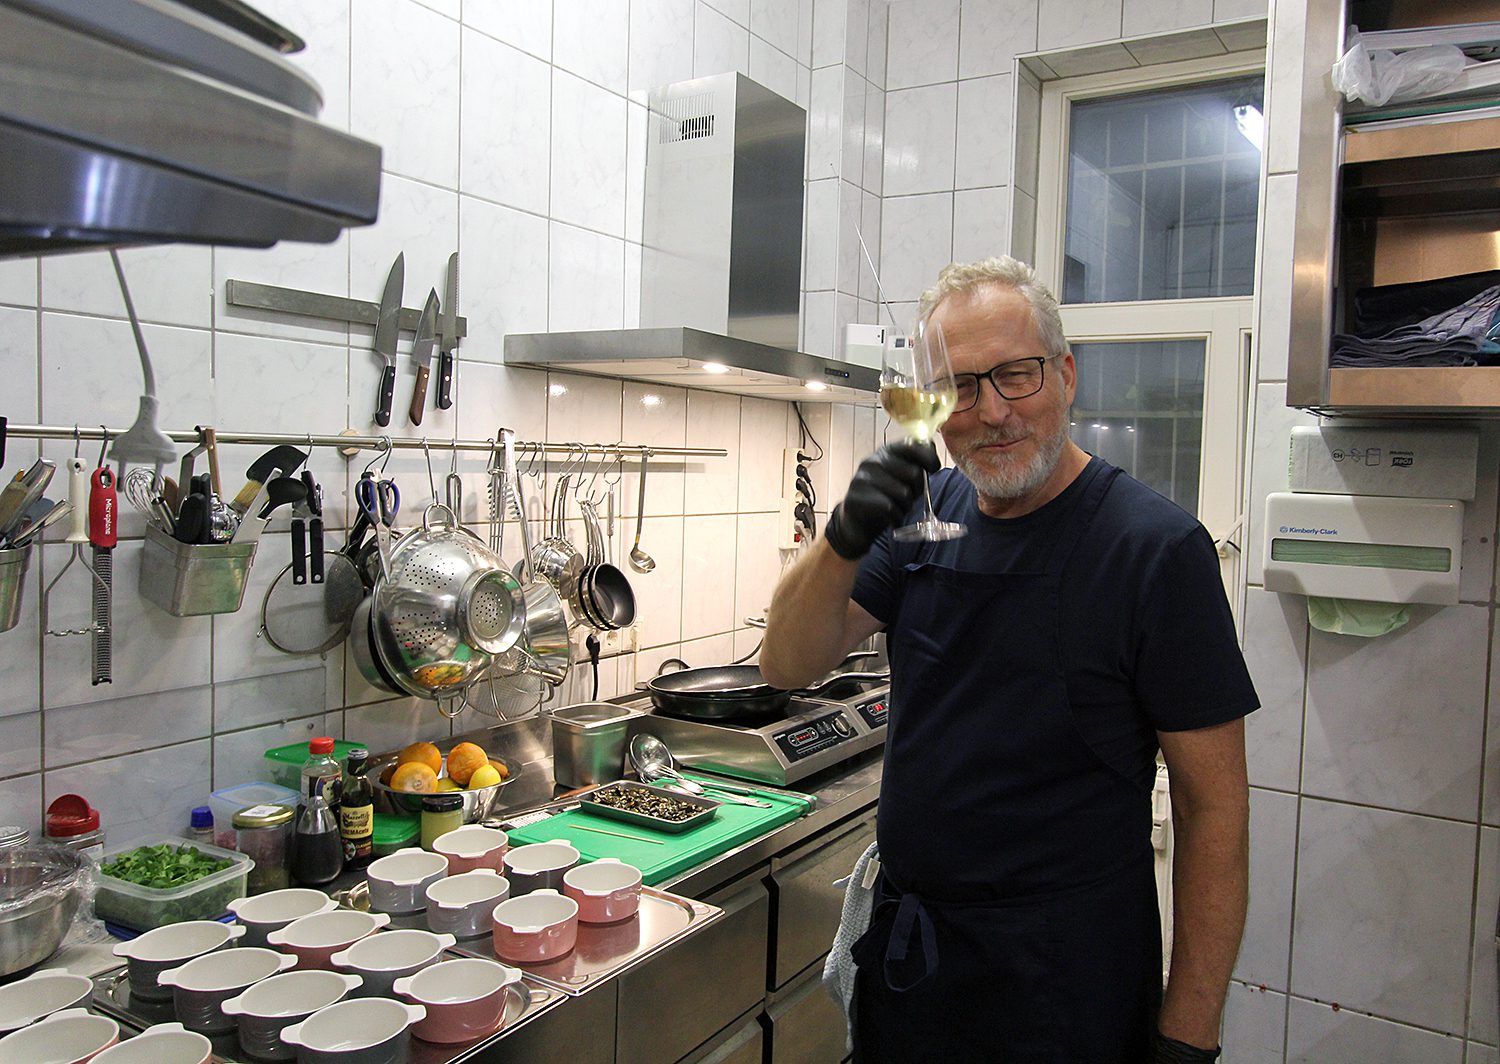 Björn in der Küche. Bevor er die Suppe serviert, prostet der der Fotografin noch Mal zu. Foto: Hensel